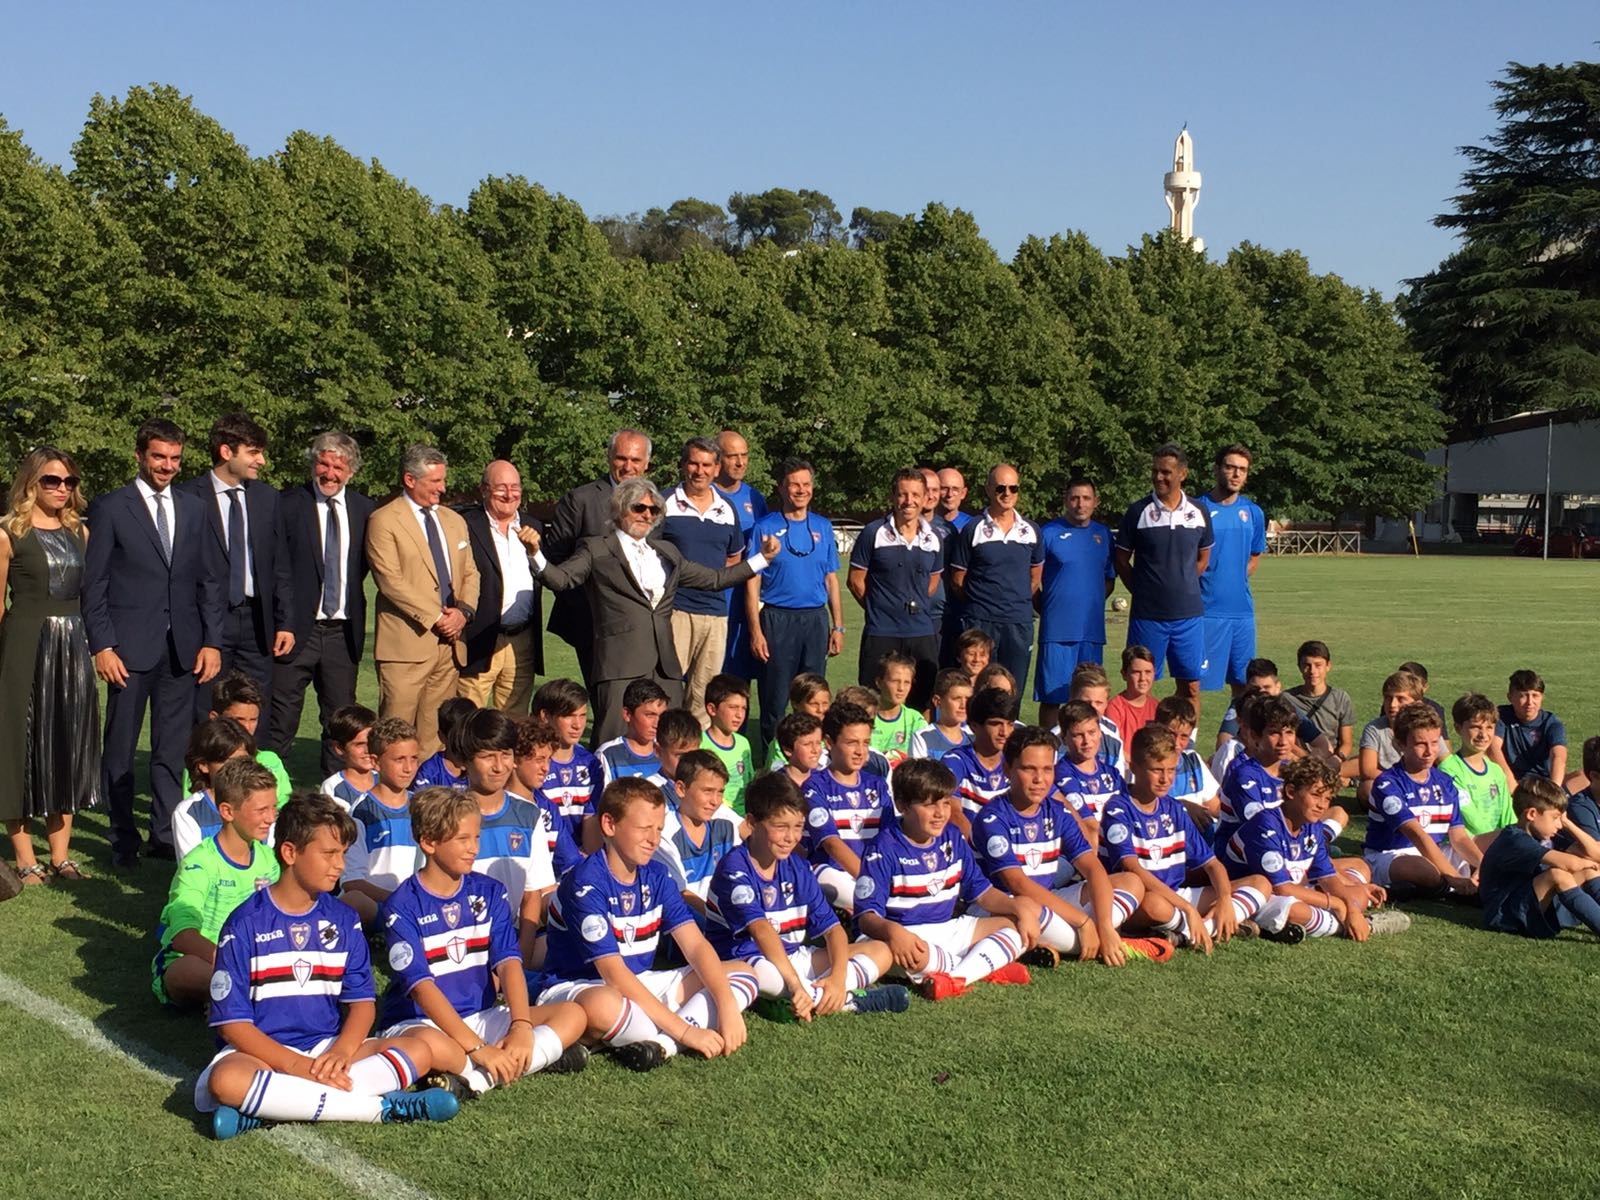 Presentato ufficialmente il progetto Futbolclub in partnership con la Sampdoria